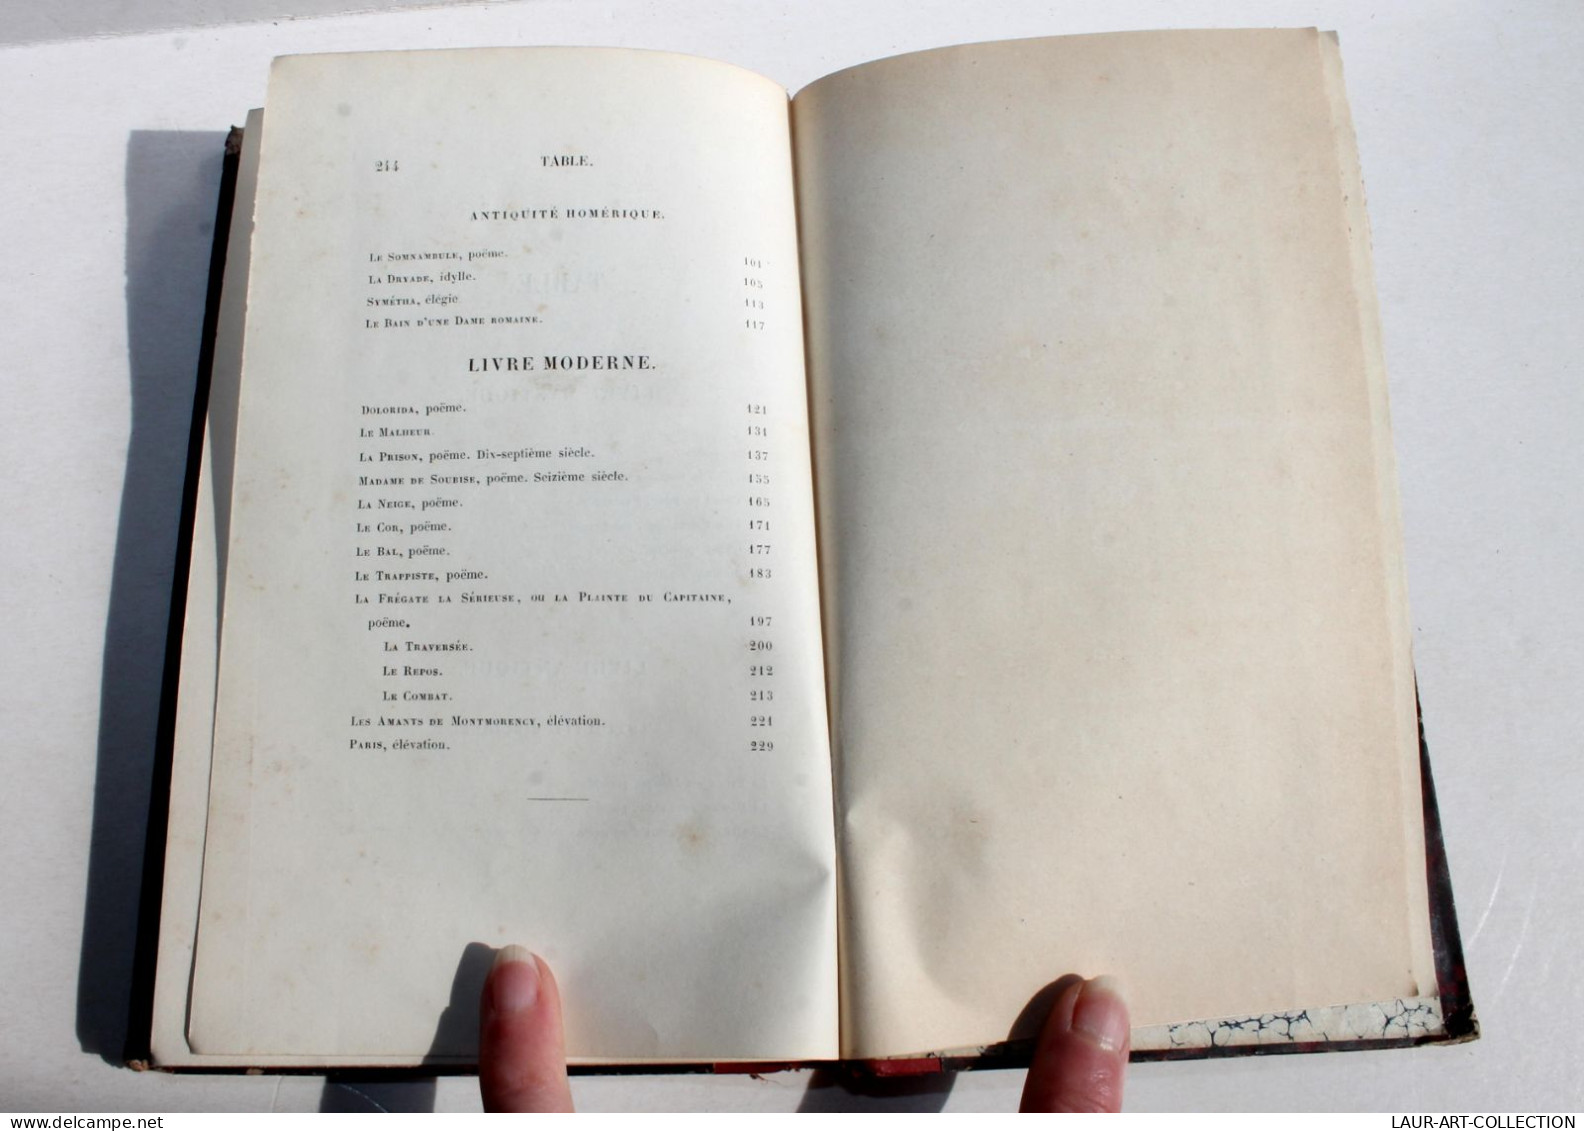 POESIES COMPLETES DU COMTE ALFRED DE VIGNY 6e EDITION 1852 CHARPENTIER / ANCIEN LIVRE FRANCAIS (1803.8) - Franse Schrijvers